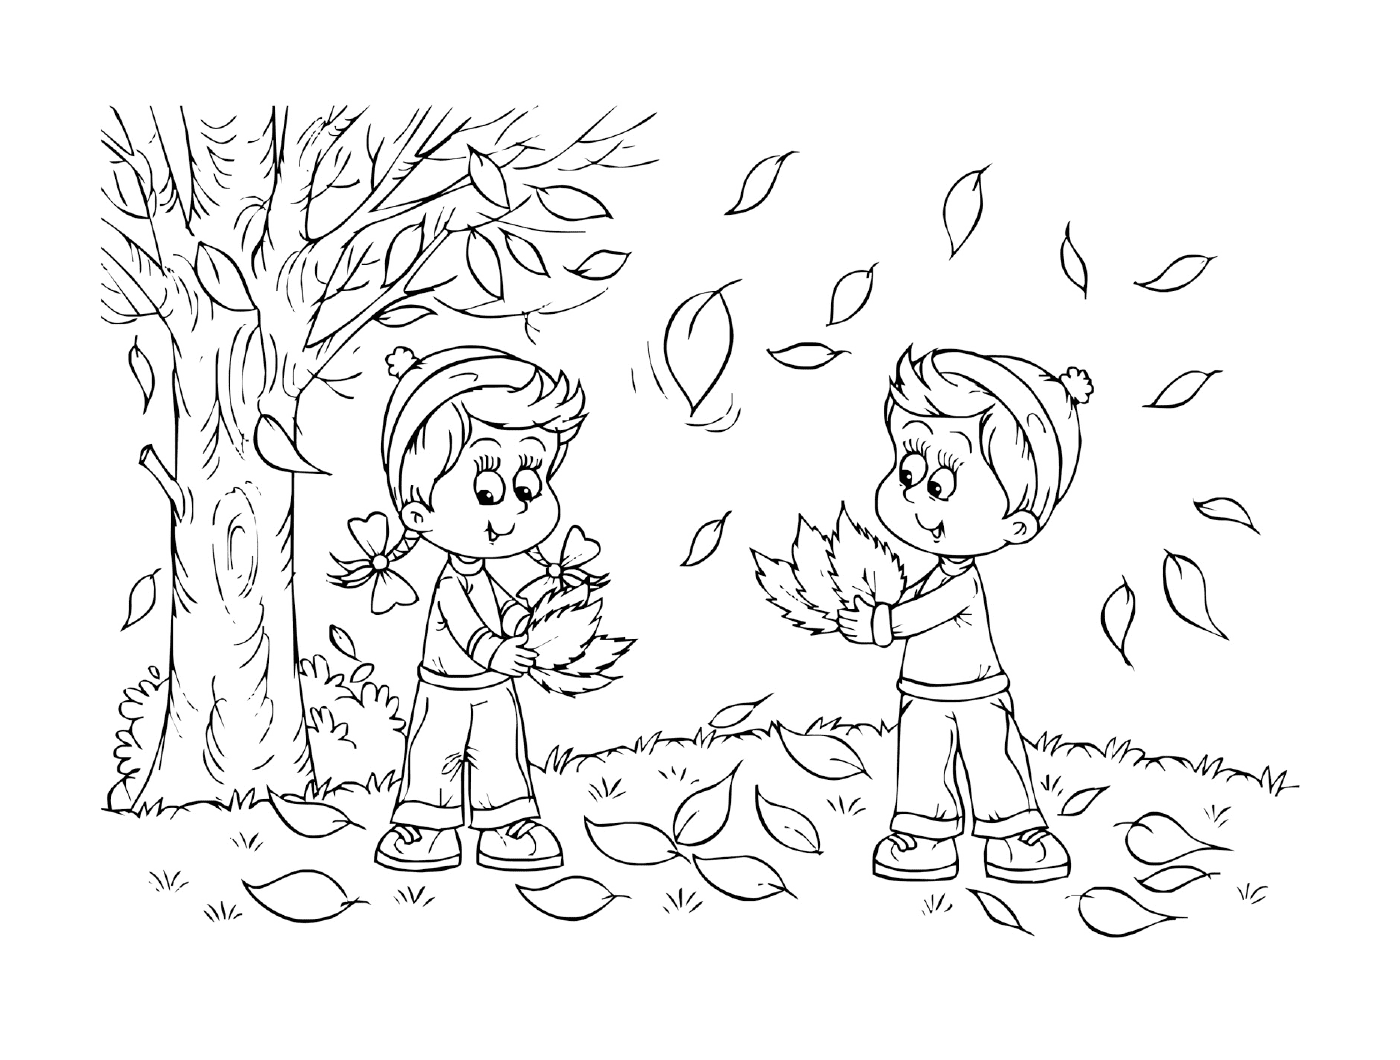  Двое детей играют с листьями в парке 